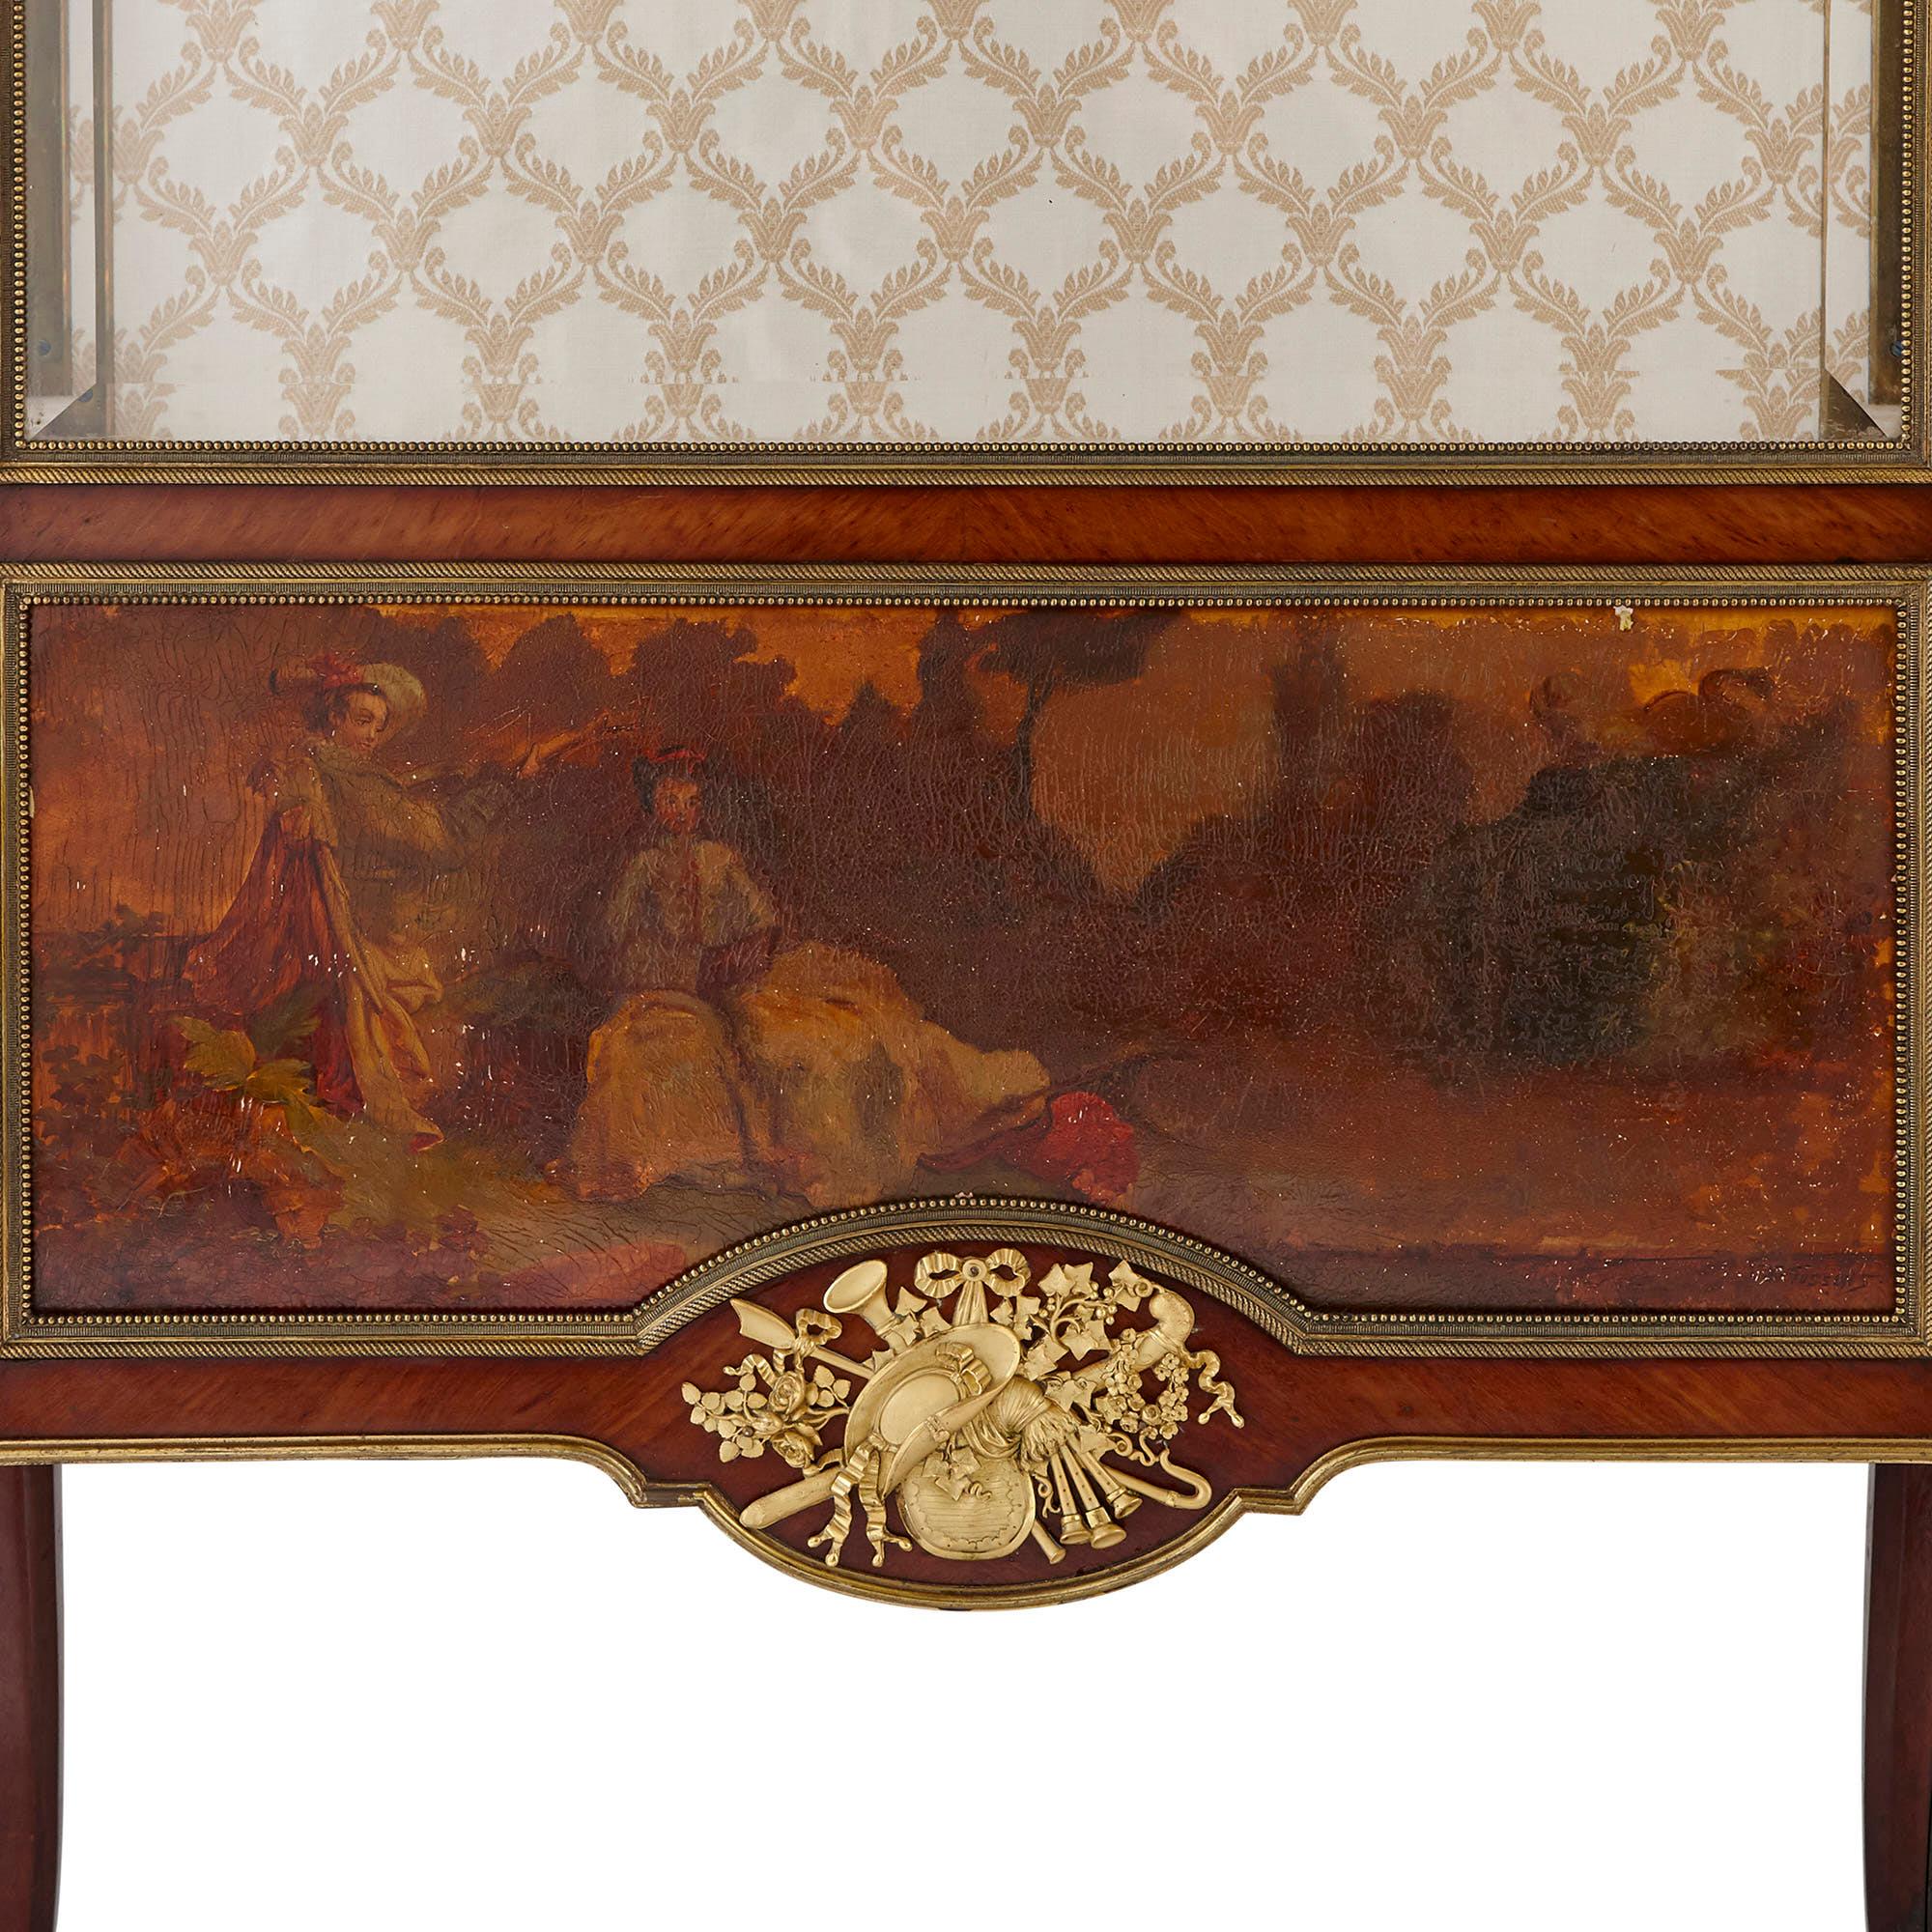 Diese eleganten Vitrinen wurden im späten 19. Jahrhundert von François Linke (Franzose, 1855-1946), dem führenden Kunsttischler seiner Zeit, hergestellt. Linke war weltberühmt für seine Möbel im Louis-XV- und Louis-XVI-Revival-Stil des 18.